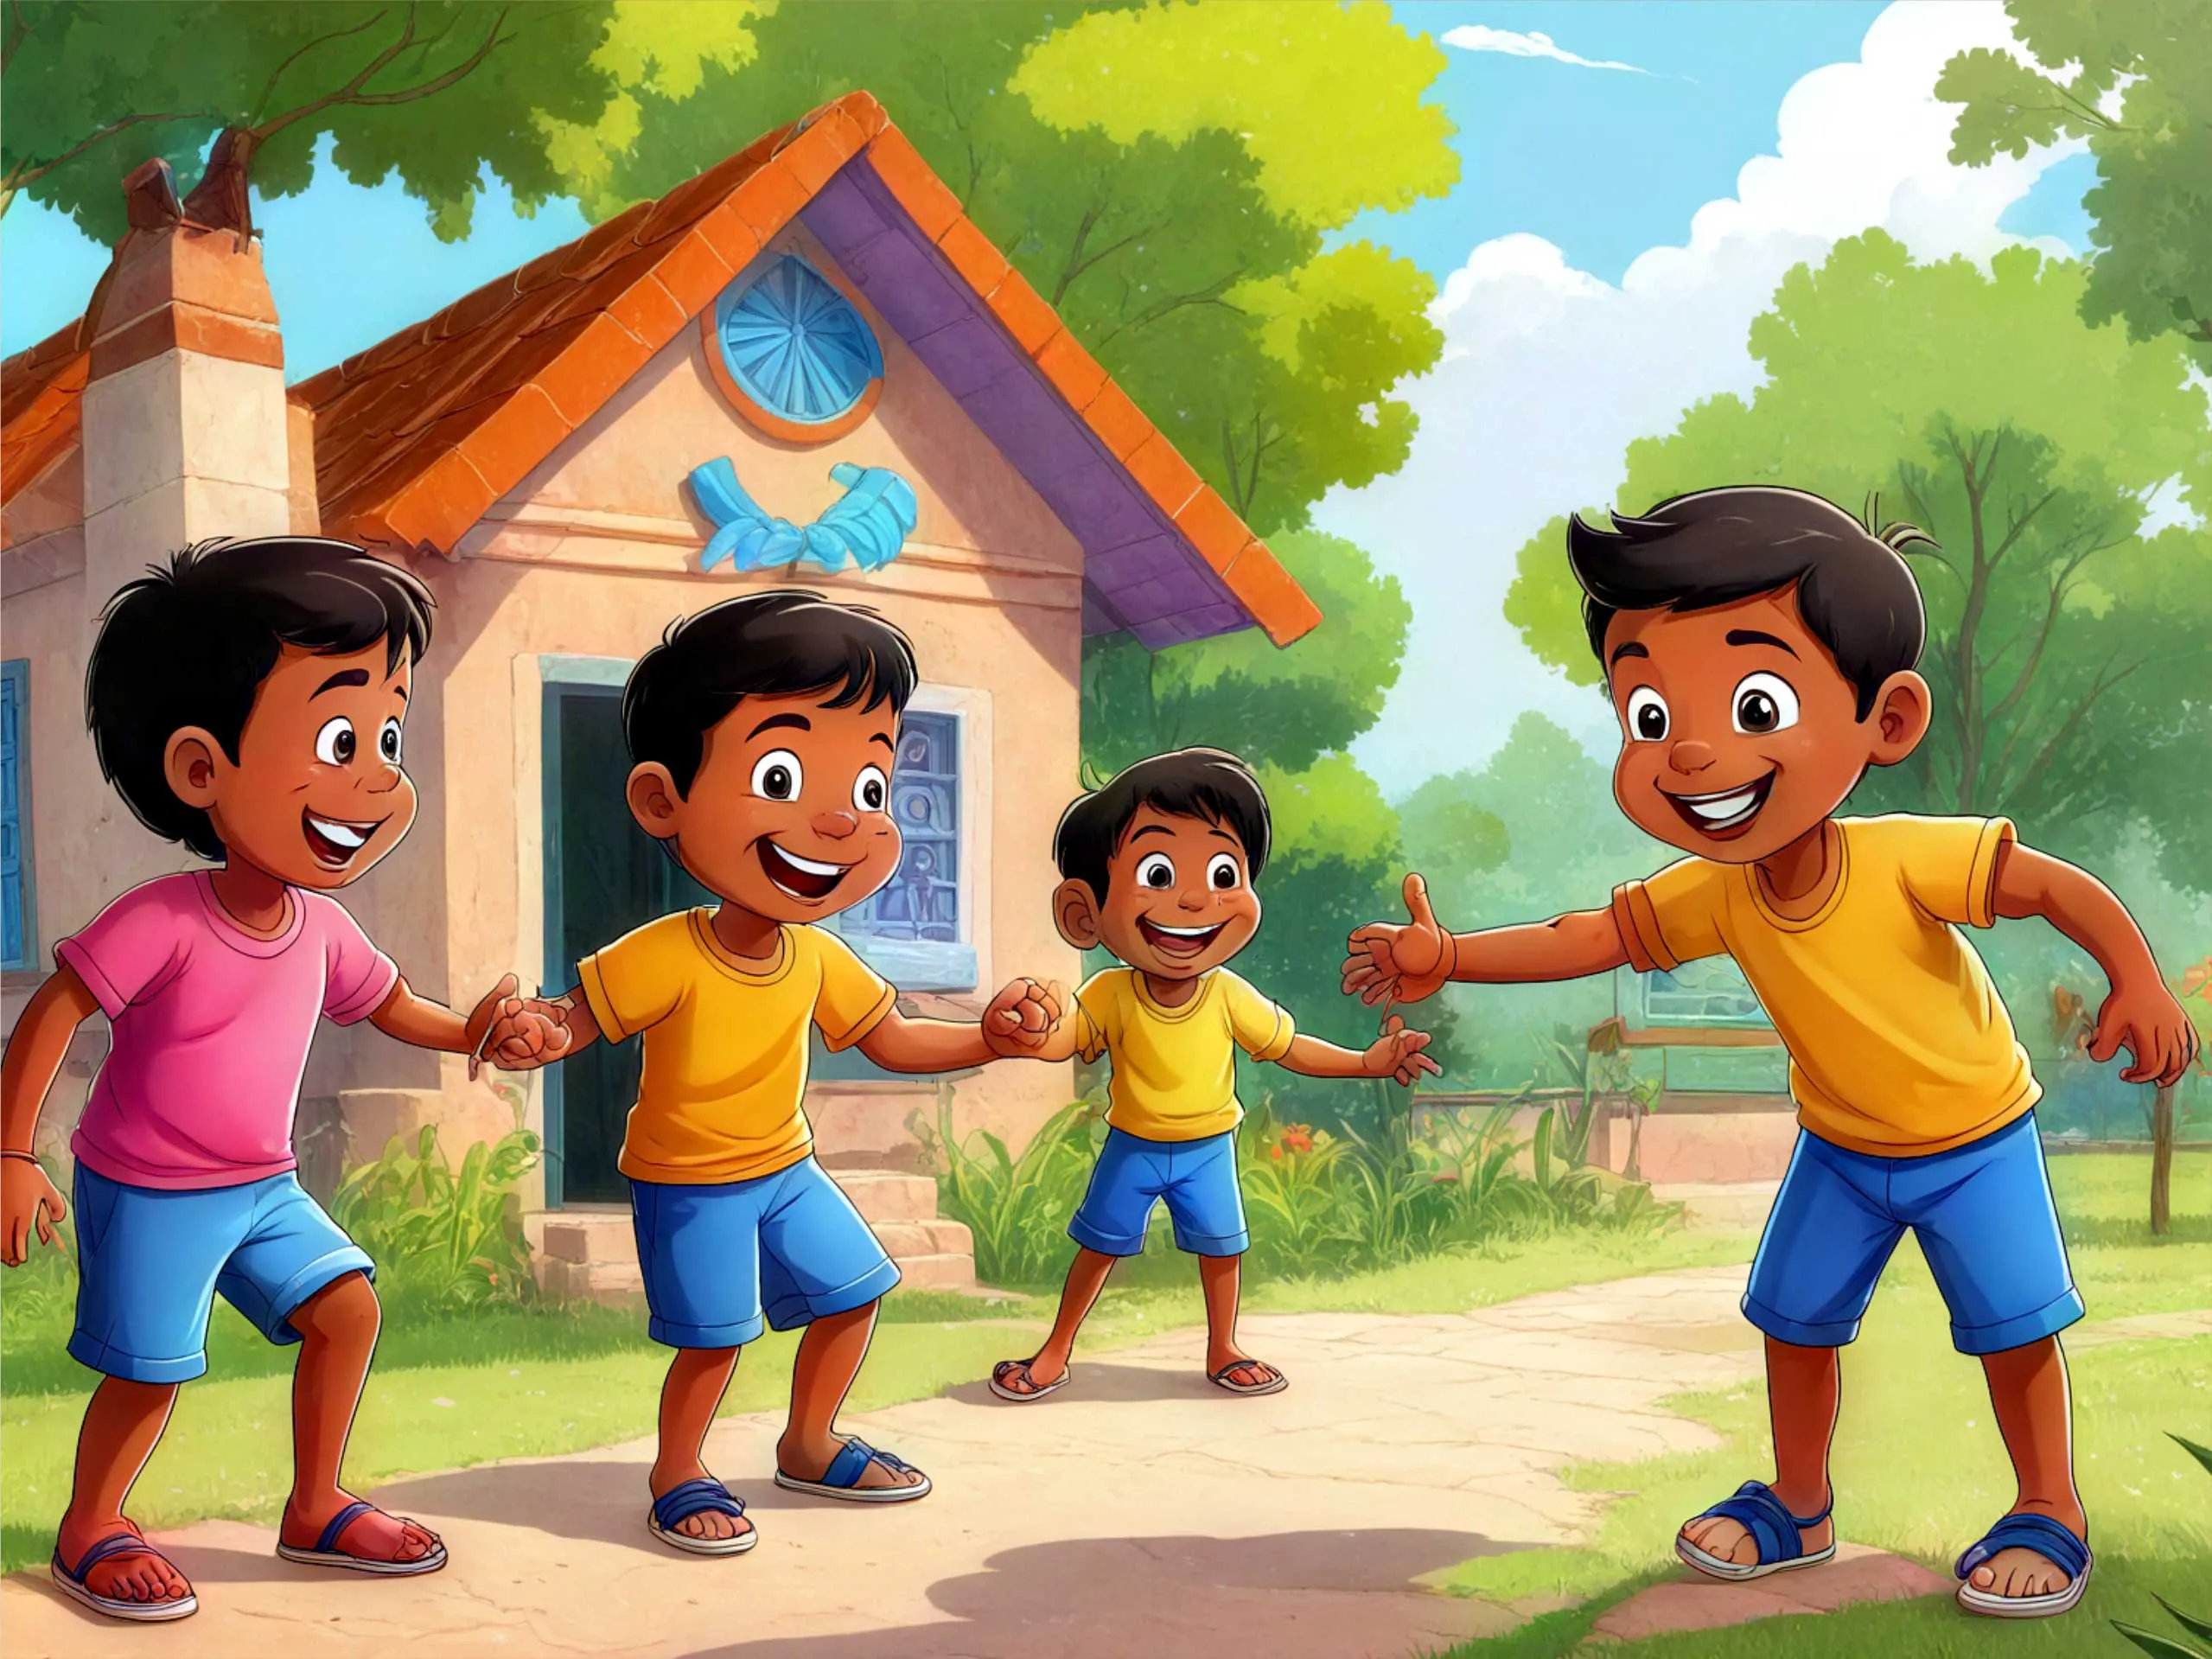 Cartoon image of kids playing